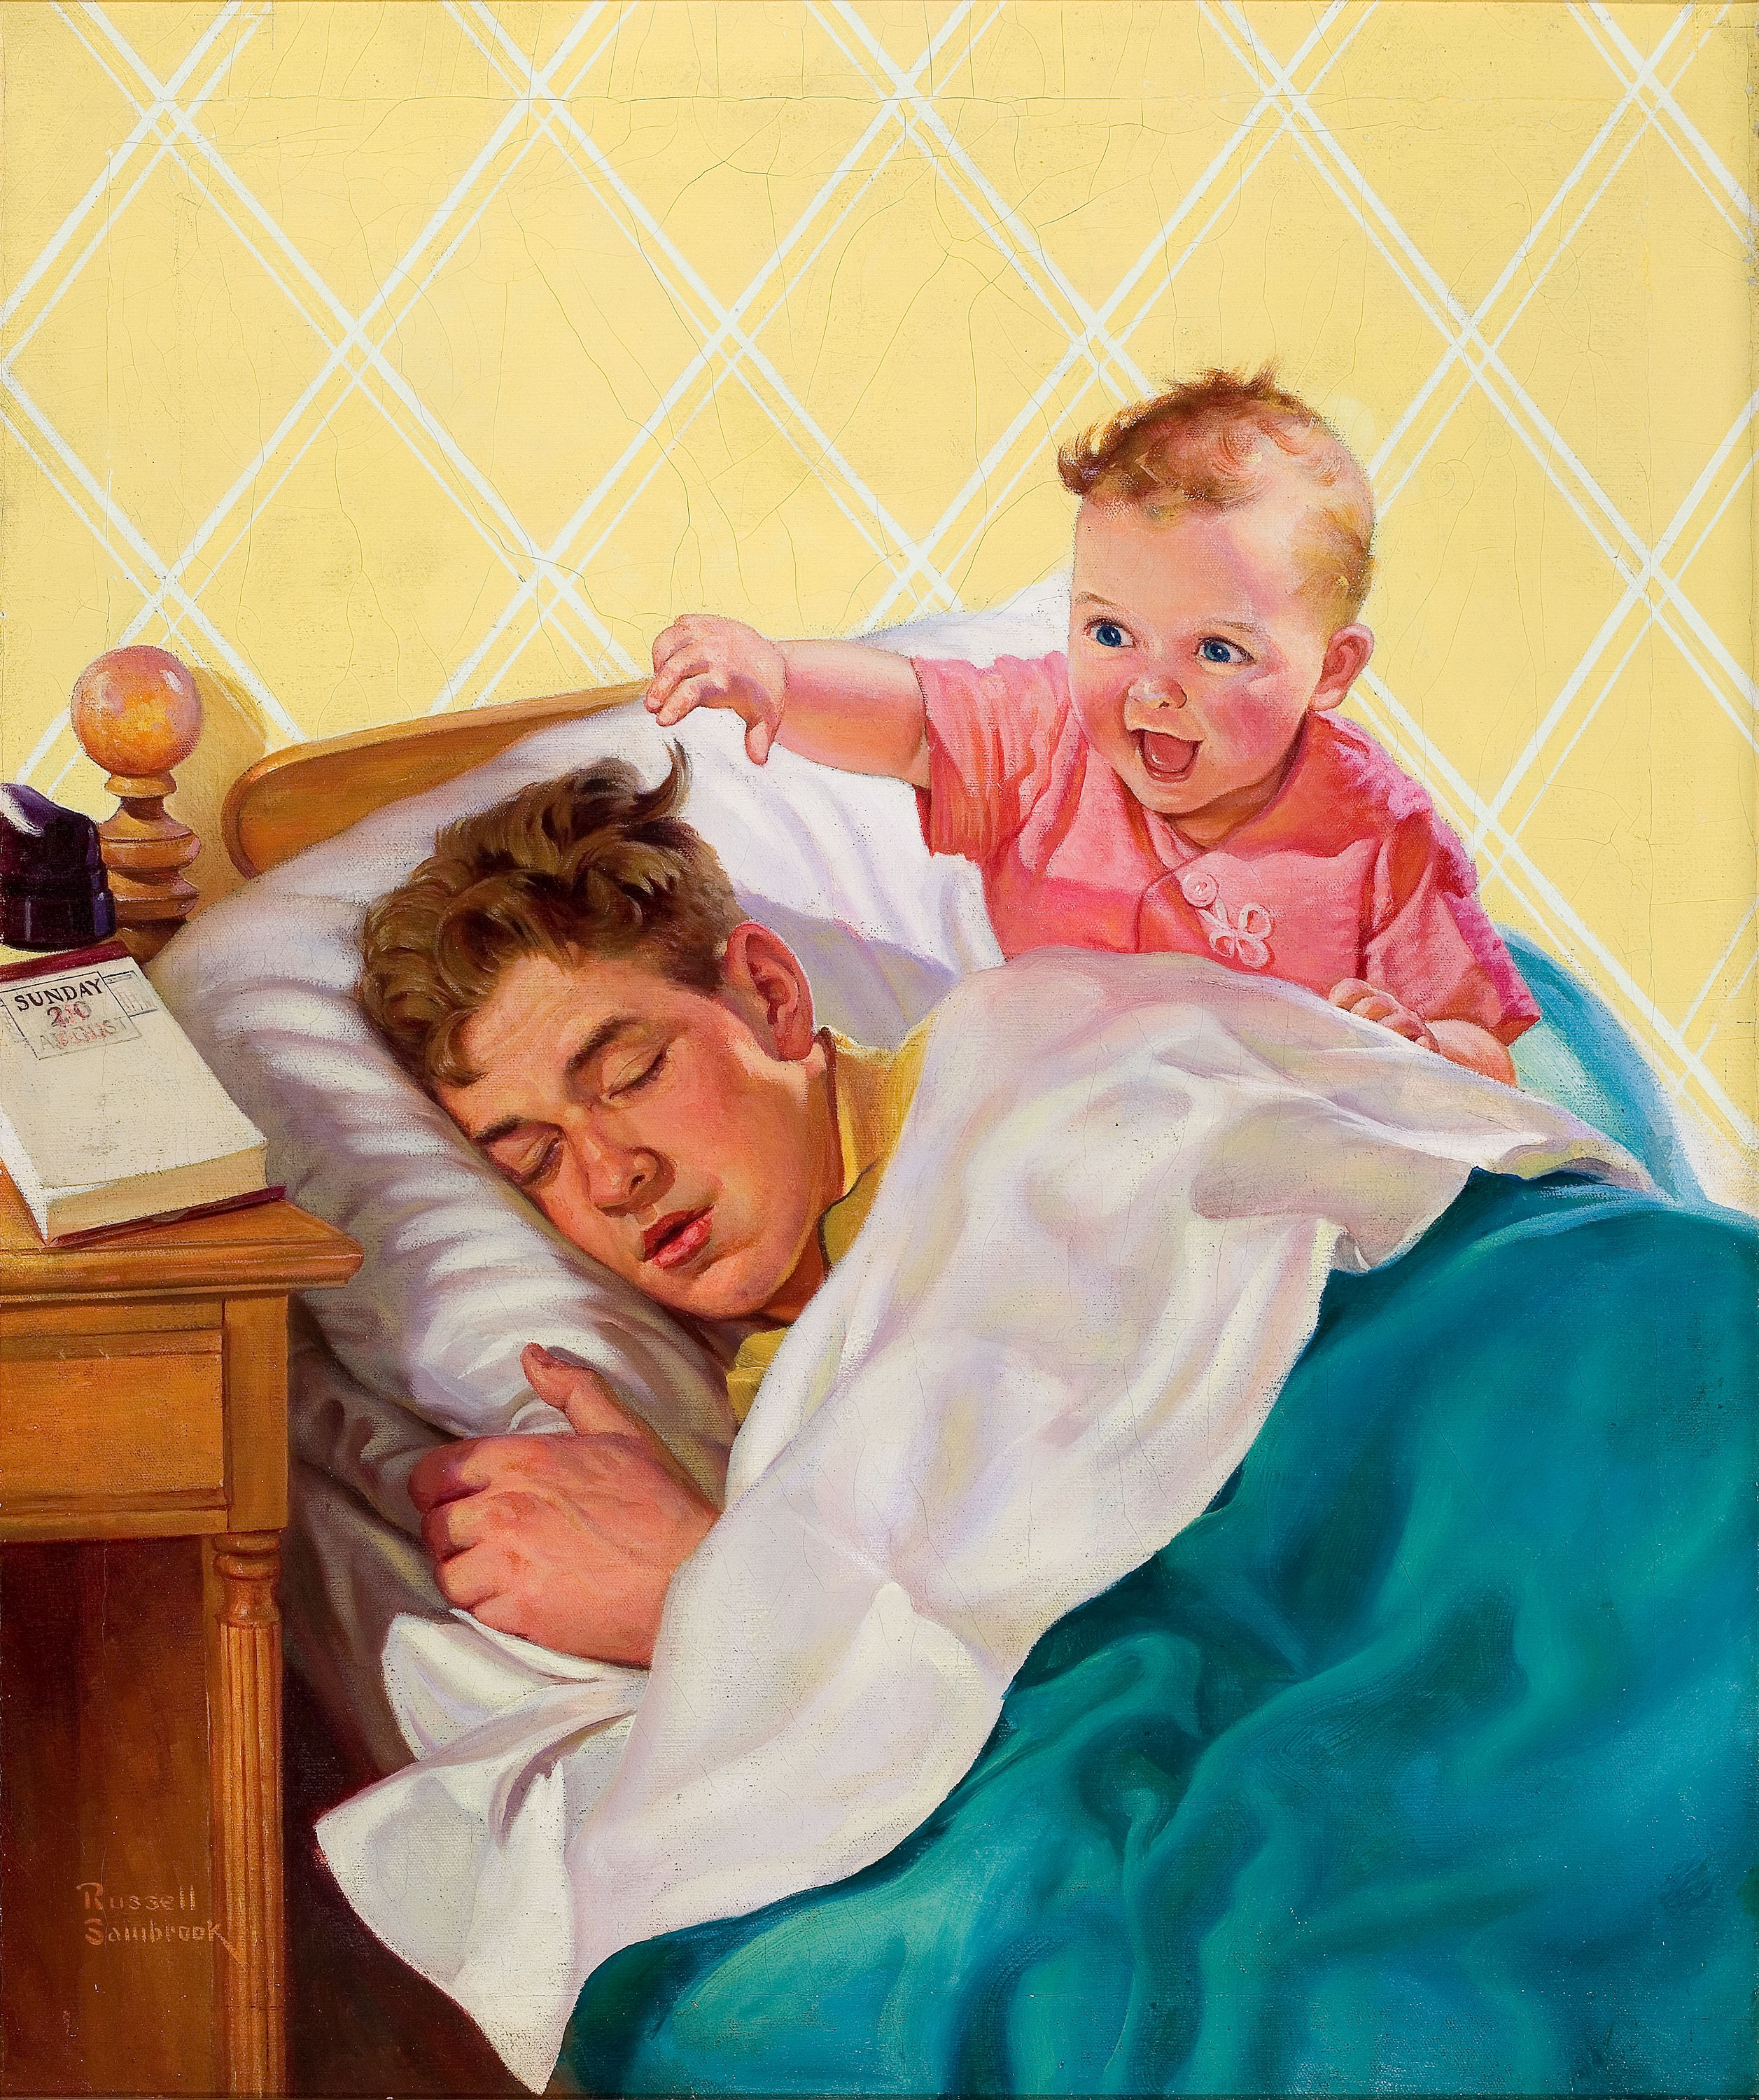 Сын разбудил спящую мать. Руссель Самбрук. Рассел Самбрук художник. Картина для папы. Отец в живописи.